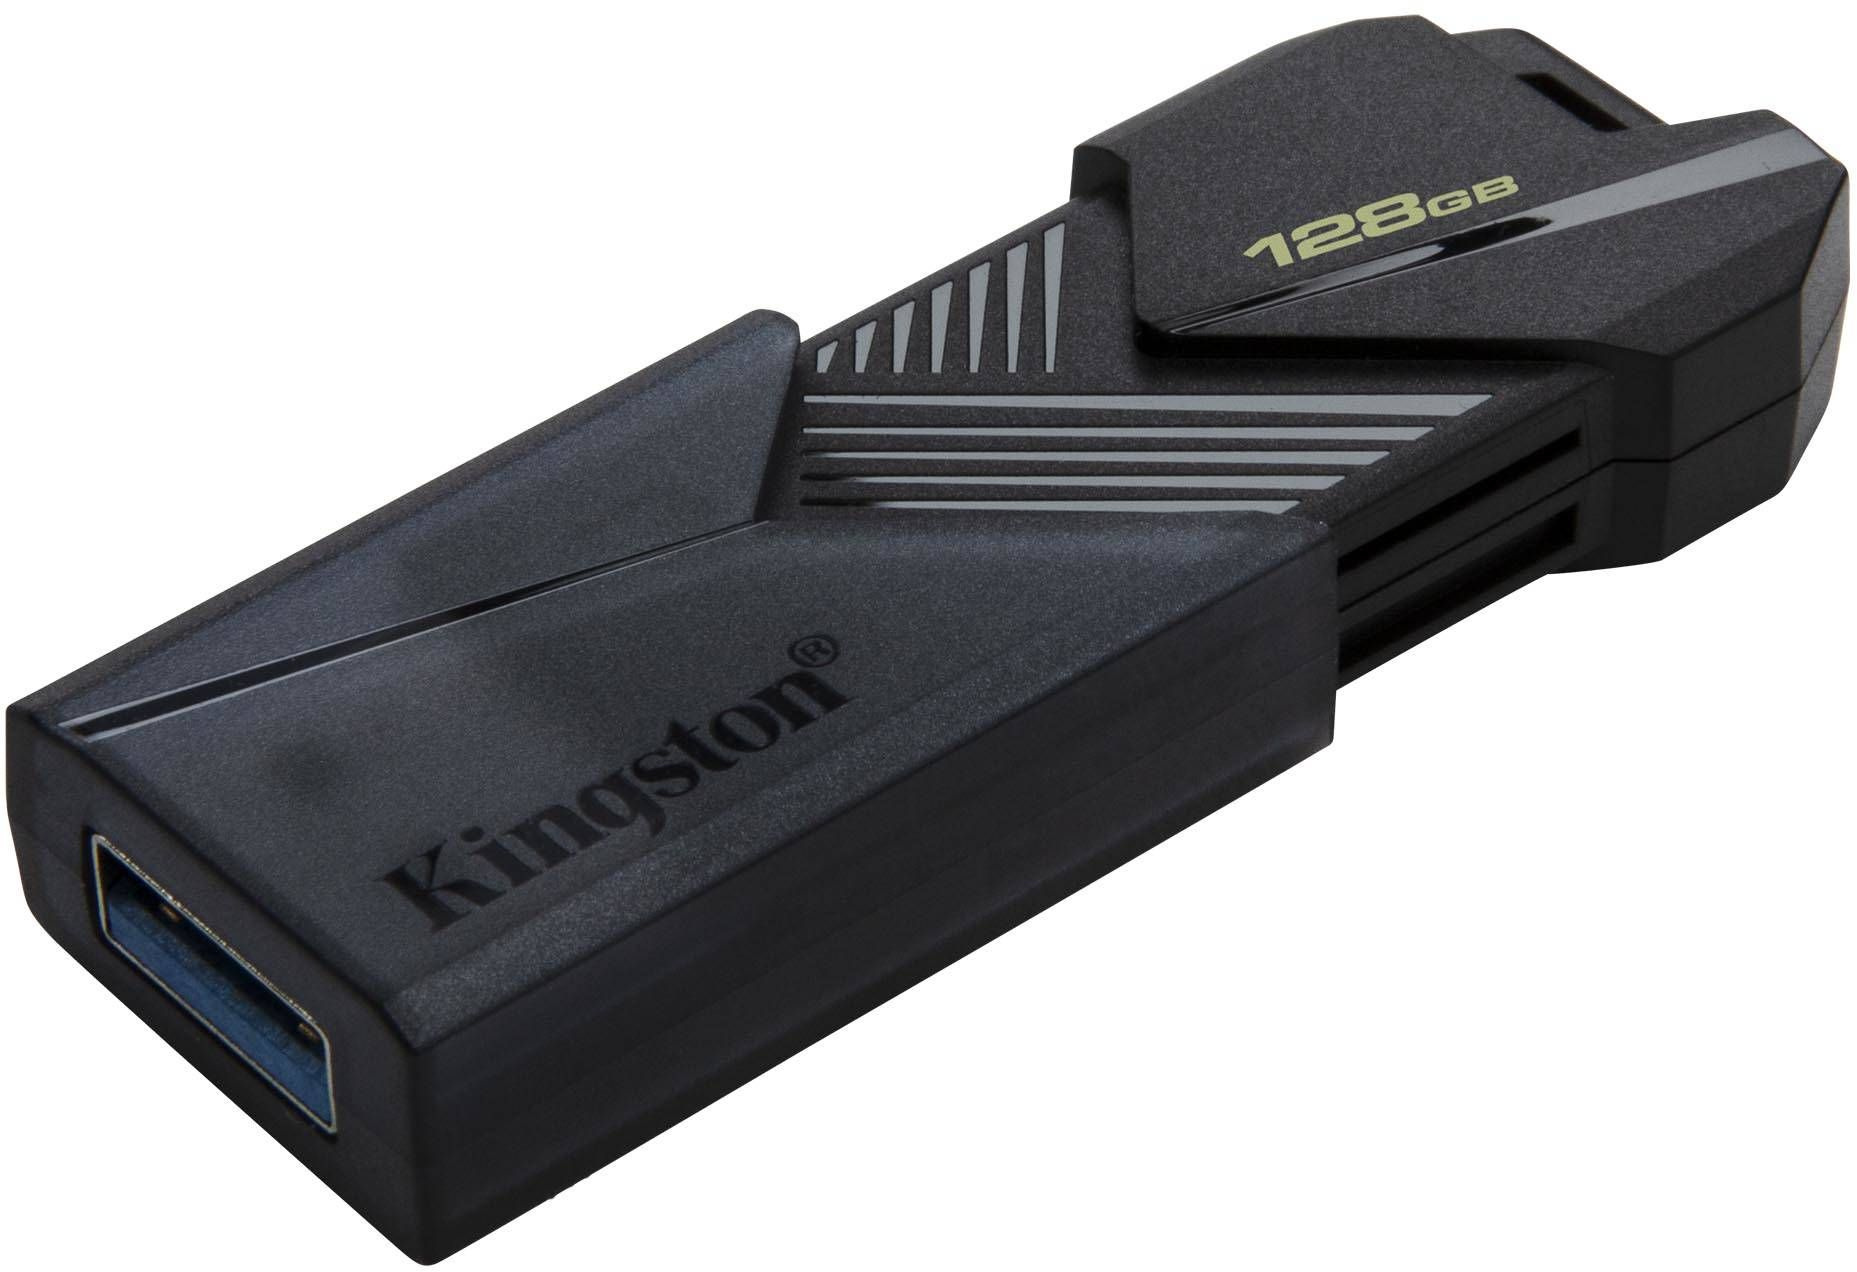 Флеш Диск Kingston 128Gb черный (DTXON/128GB)